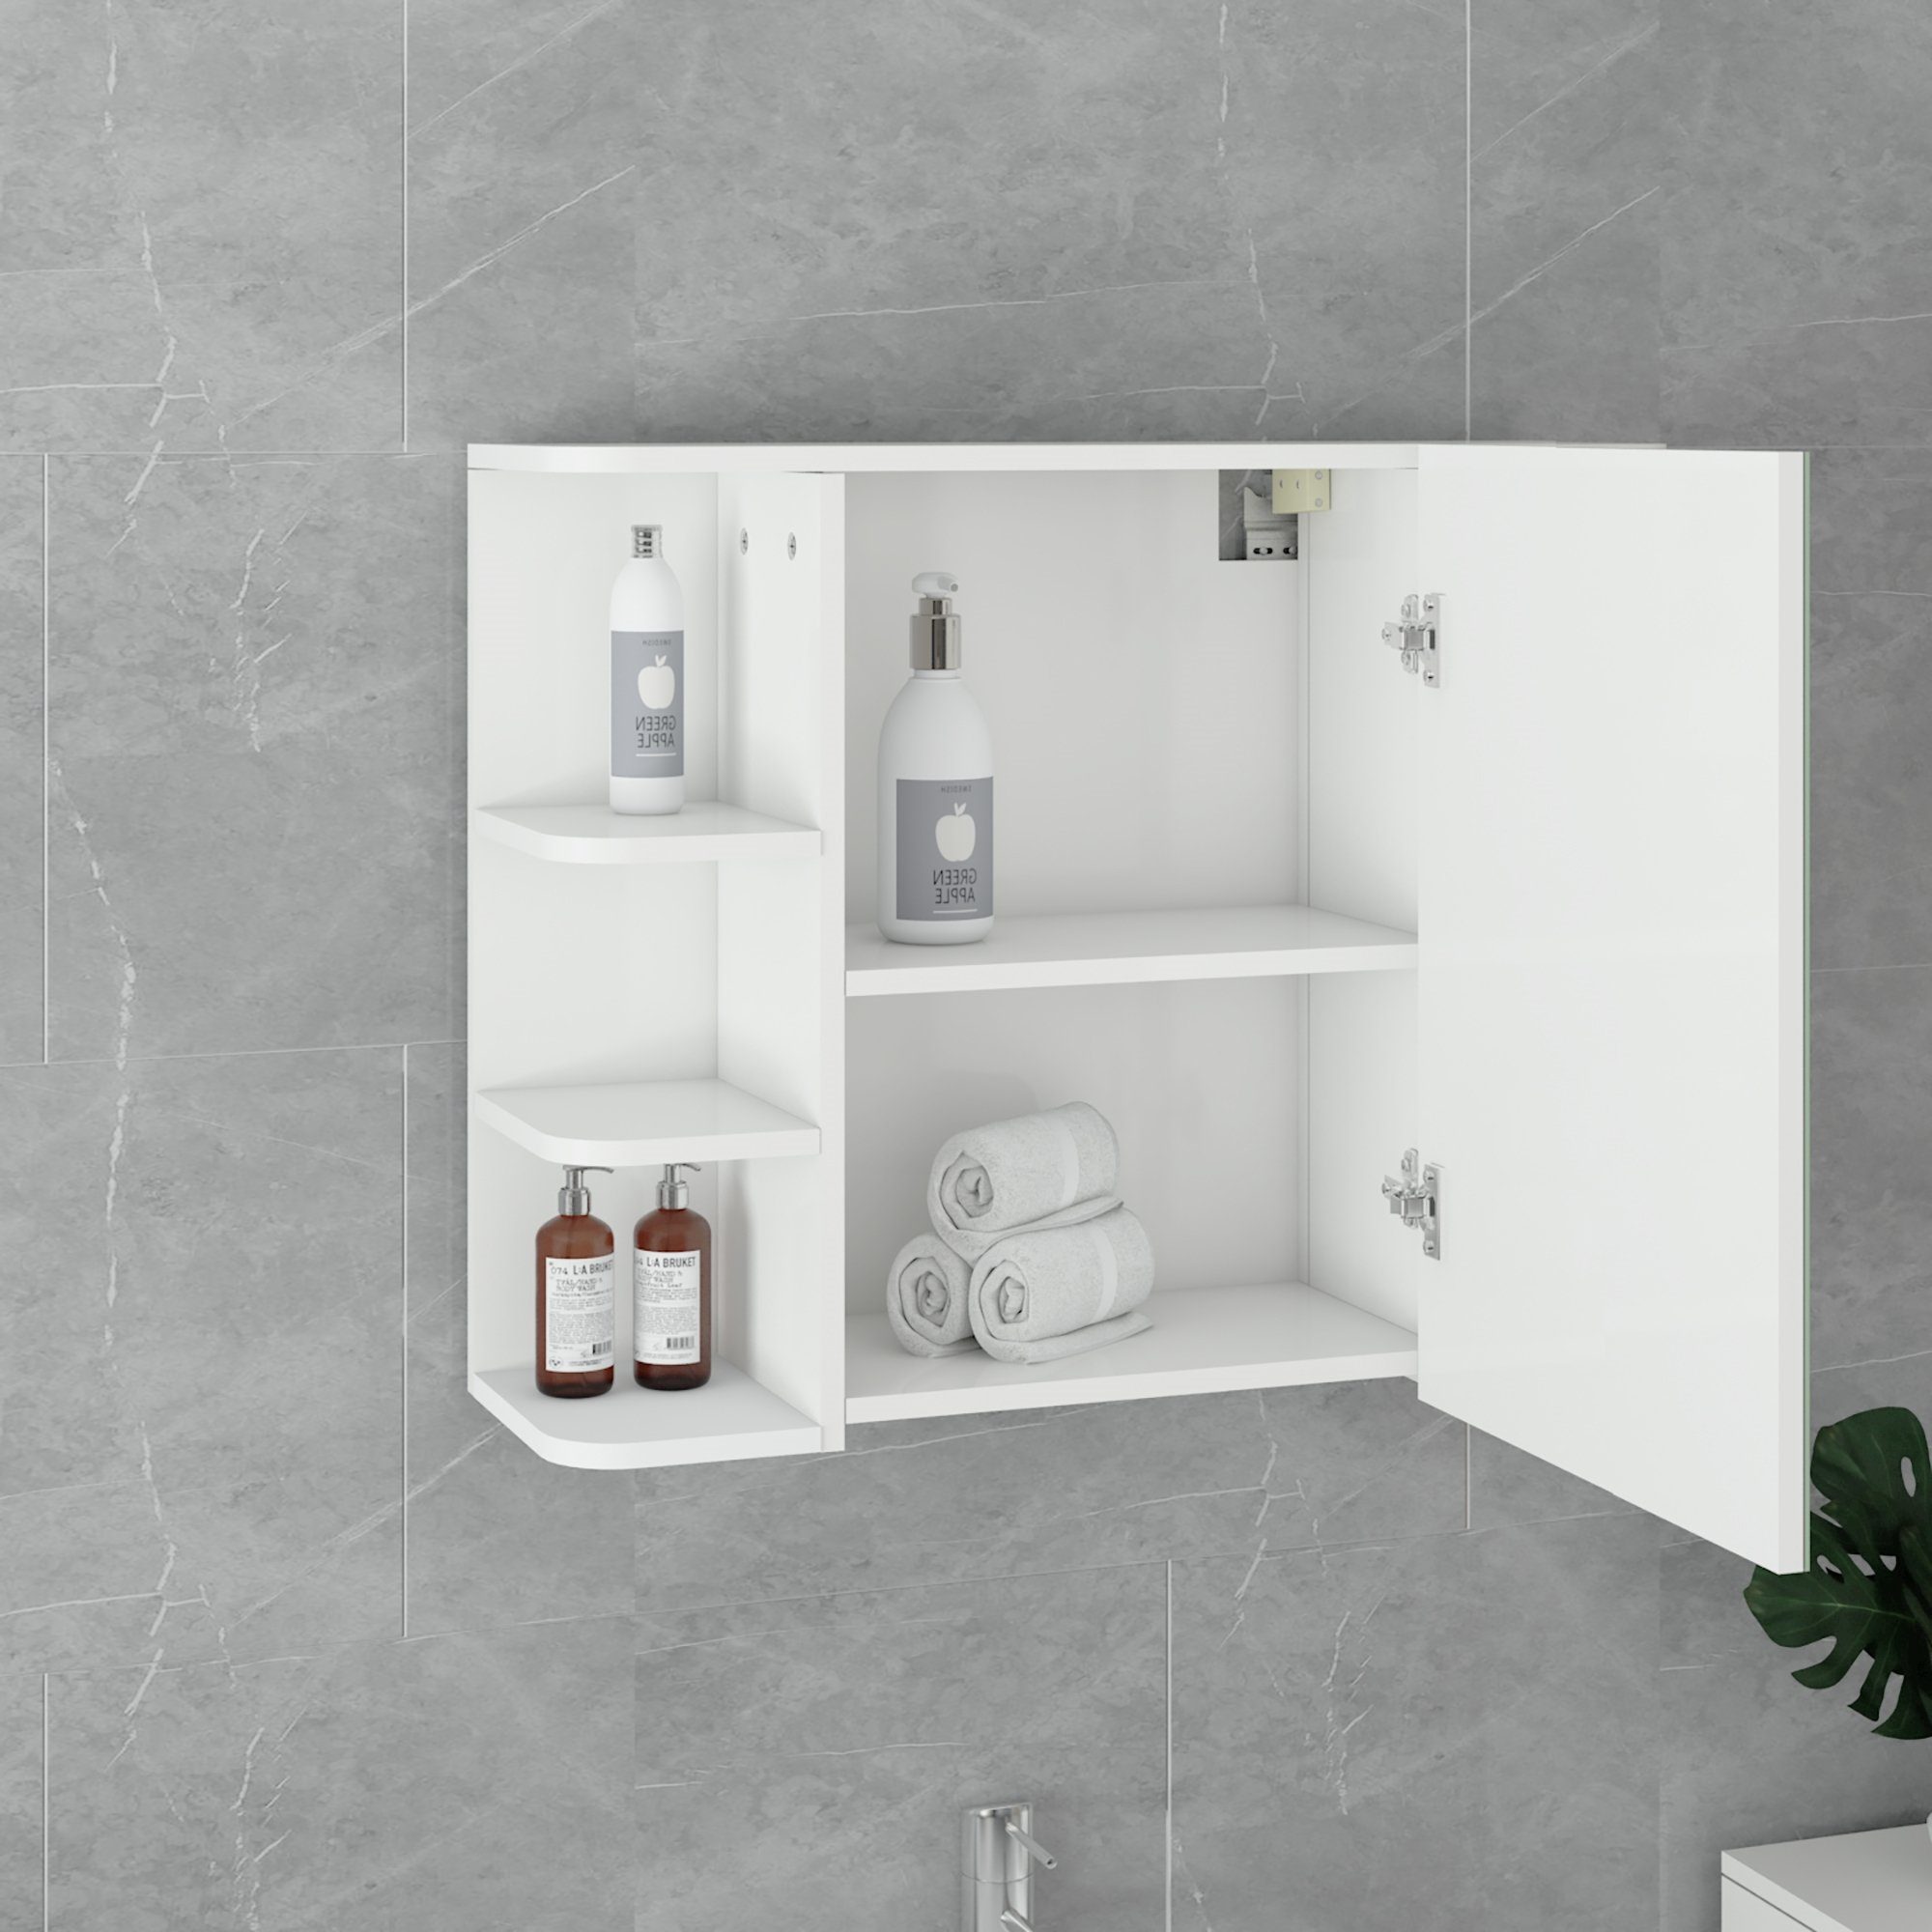 ML-DESIGN Badezimmerspiegelschrank Spiegelschrank Badezimmerschrank Hängeschrank Tür Badspiegel Weiß MDF-Holz aus 80x64x21cm Ablagen Wandschrank und 8 viel Stauraum